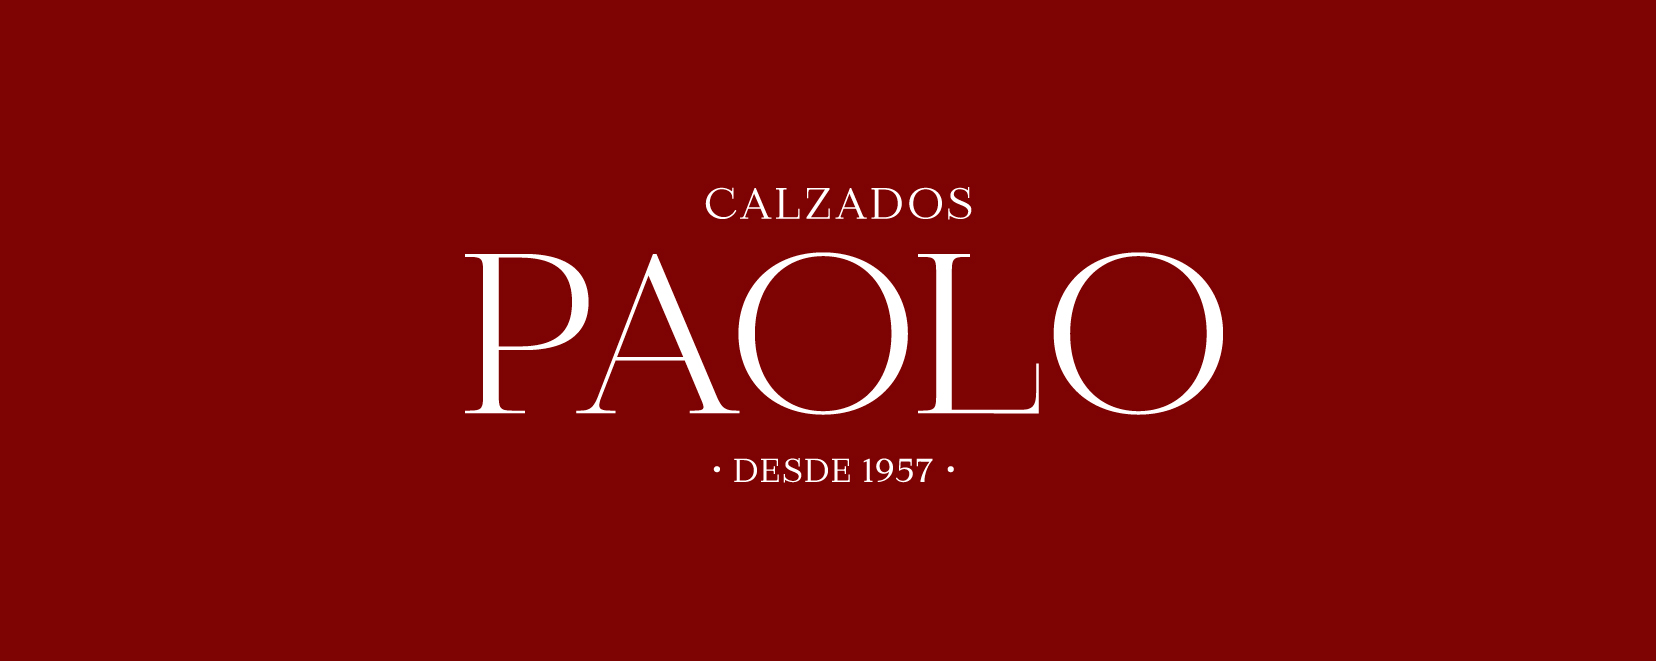 Paolo Calzados